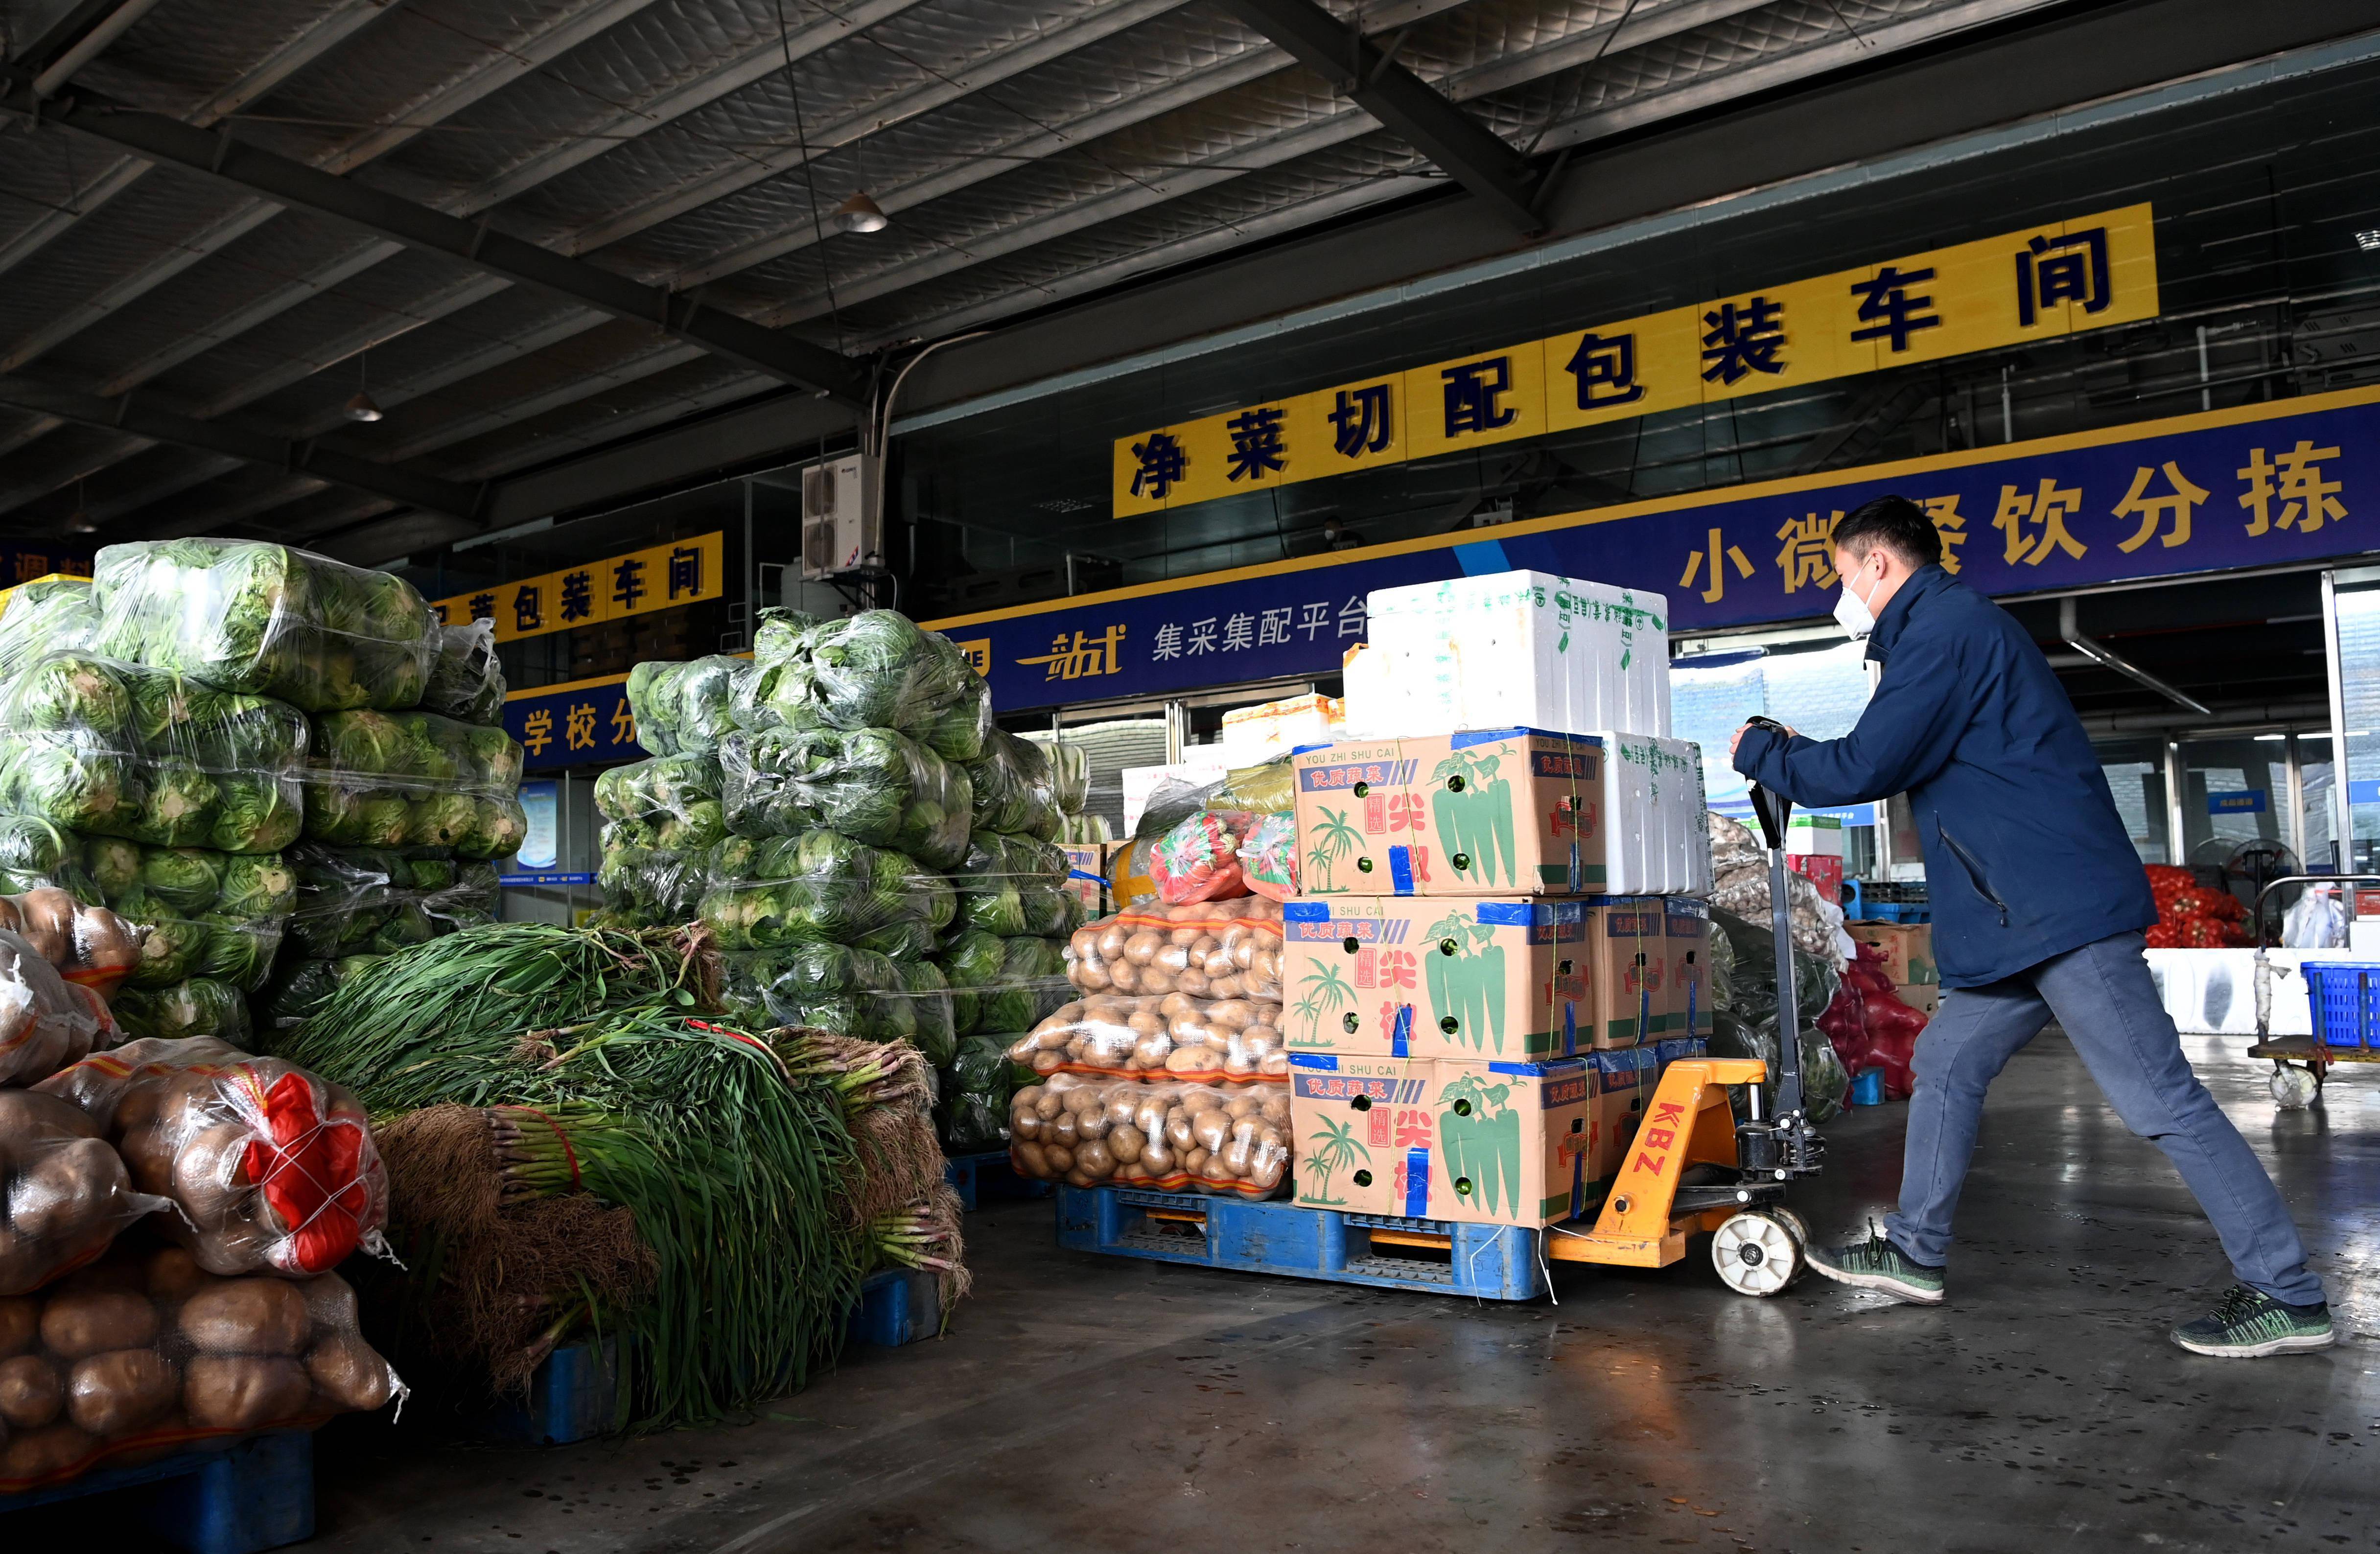 陕西米禾供应链管理股份有限公司的工作人员在分拣蔬菜(12月19日摄)